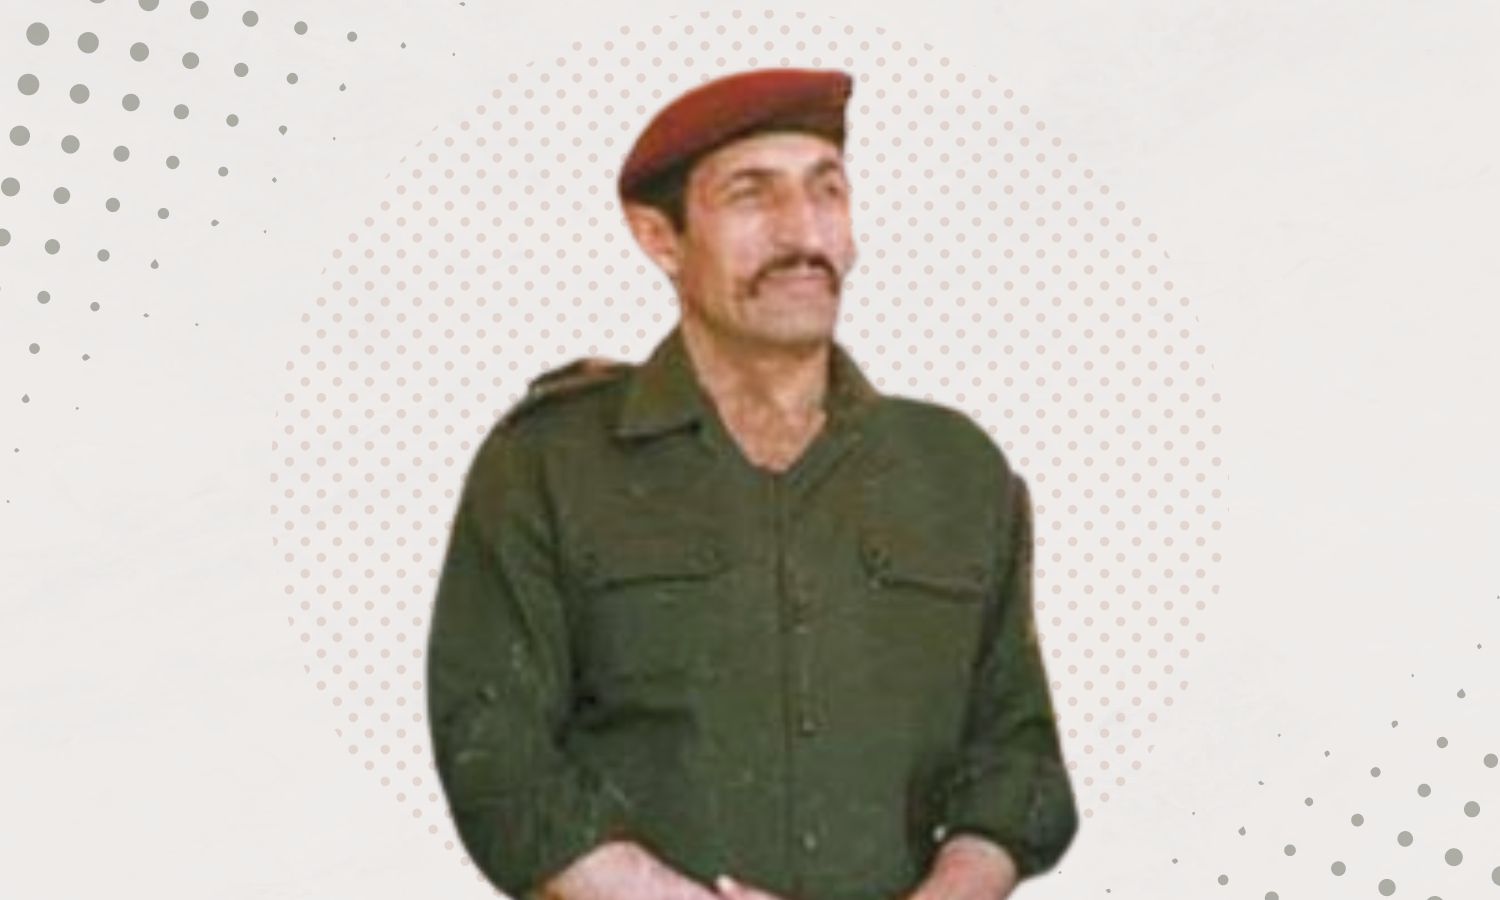 اللواء علي حيدر قائد "القوات الخاصة" في قوات النظام السوري في عهد حافظ الأسد)